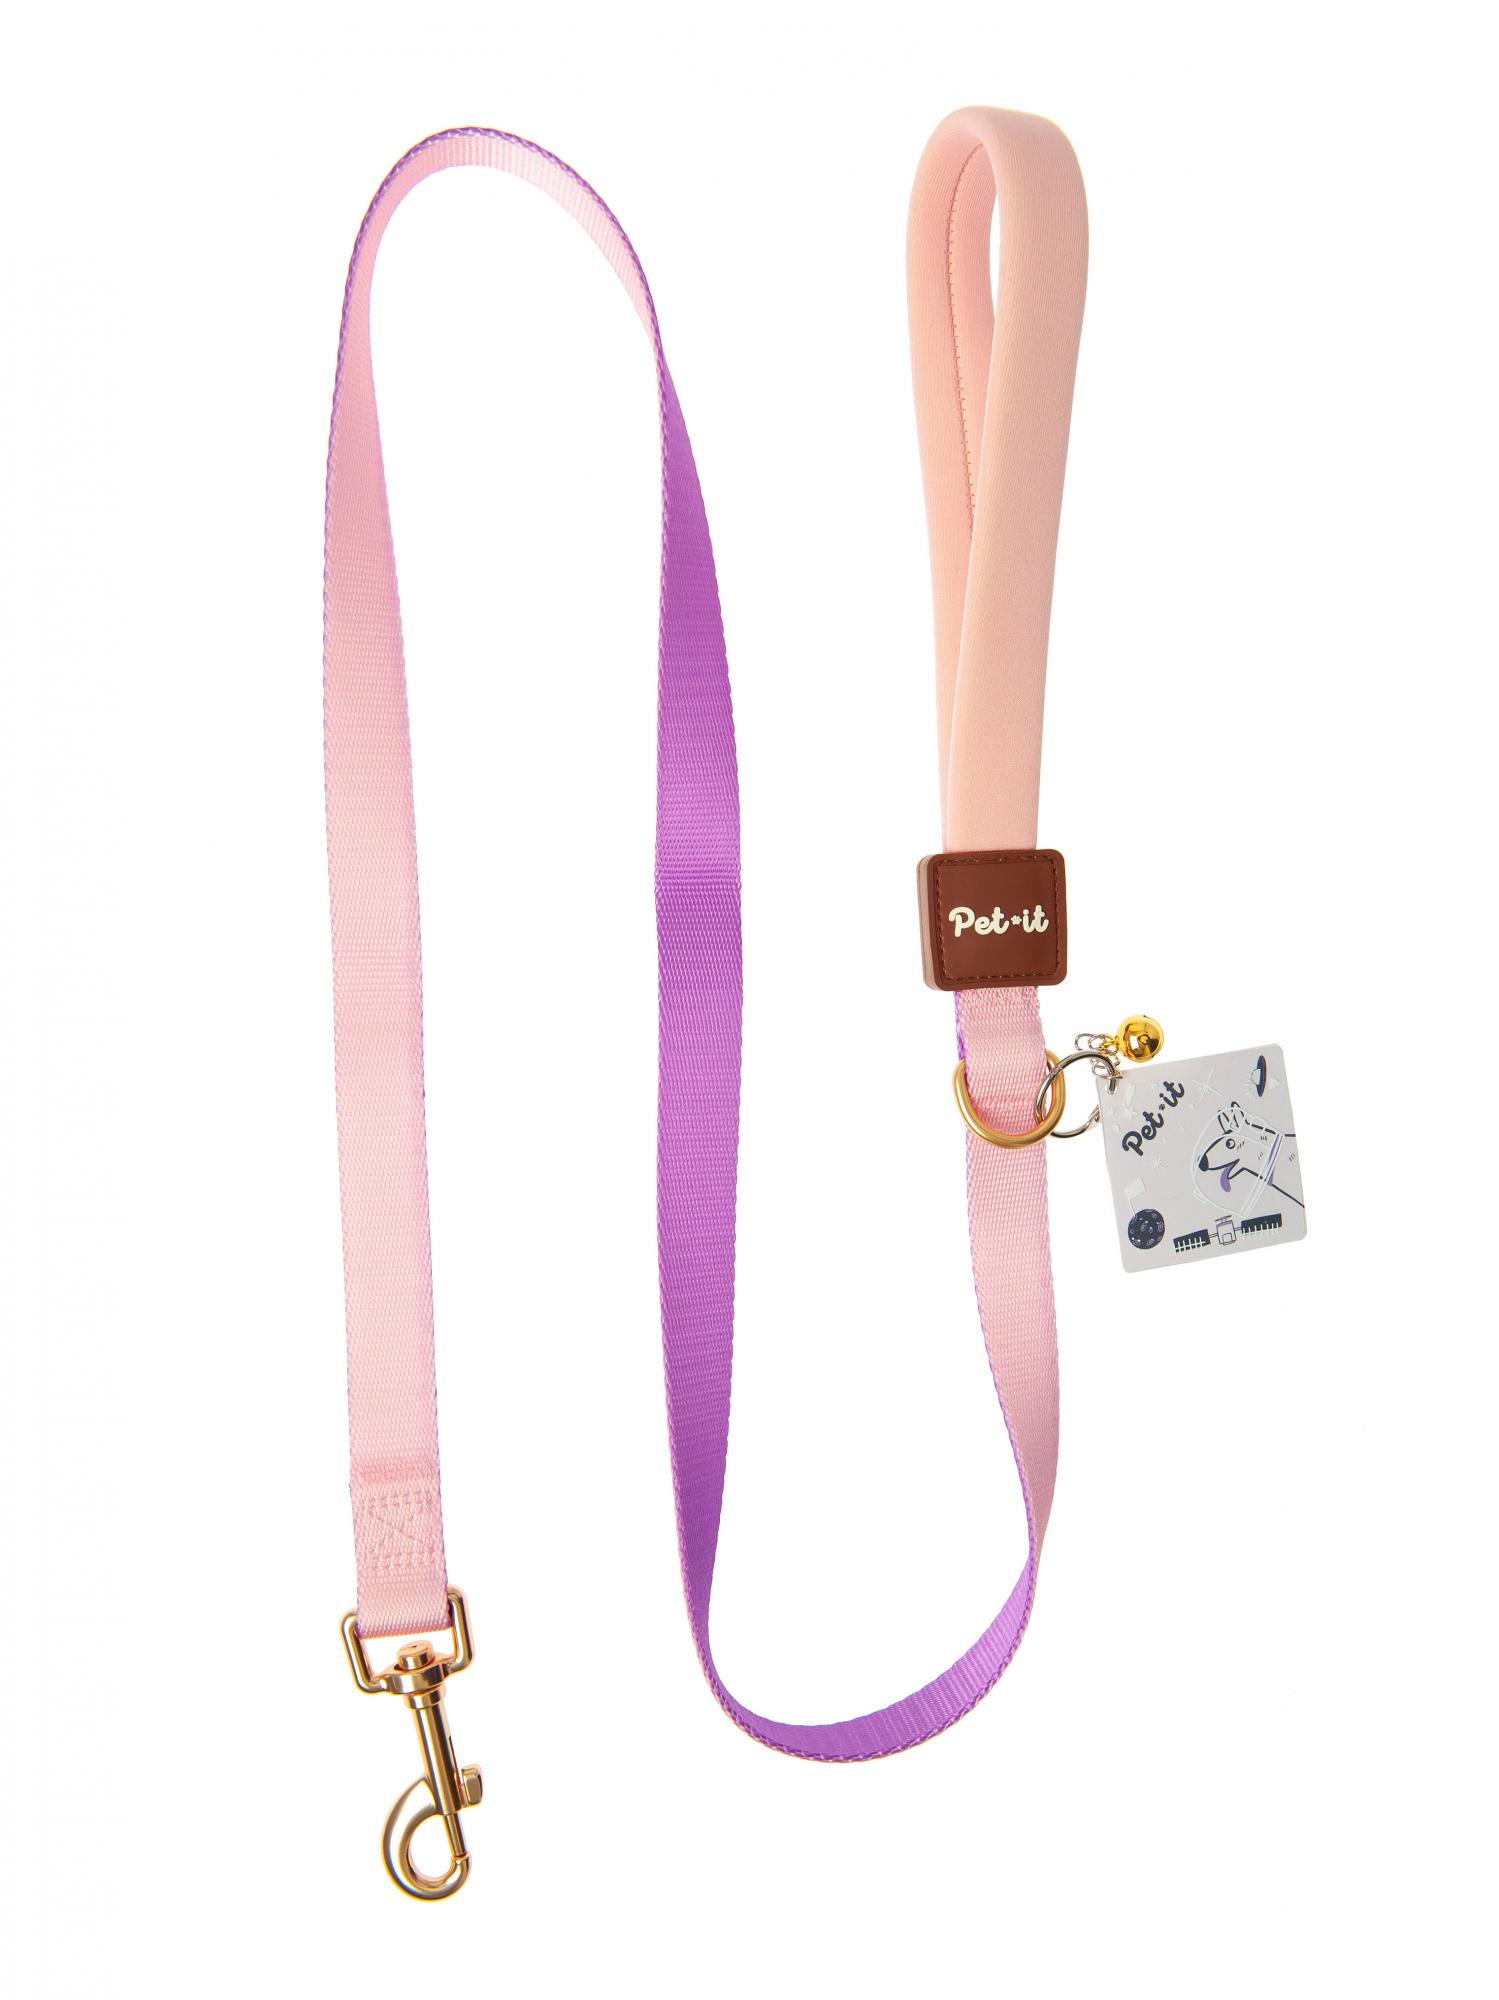 Поводок для собак Pet-it  Dream, M, 1.9х120 см, розовый